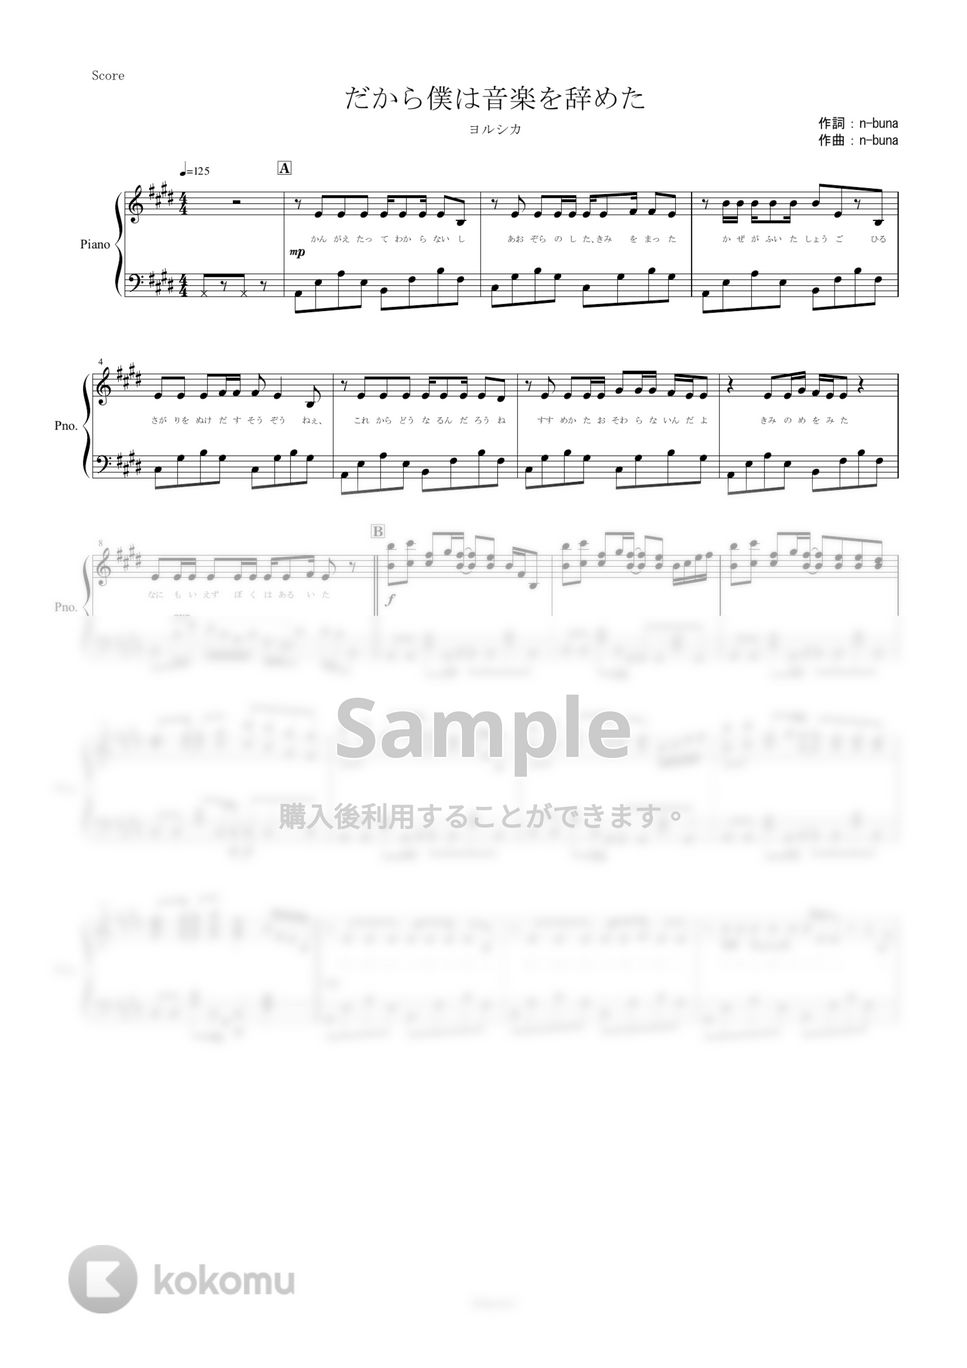 ヨルシカ - だから僕は音楽を辞めた (ピアノ楽譜/全６ページ/中級) by yoshi